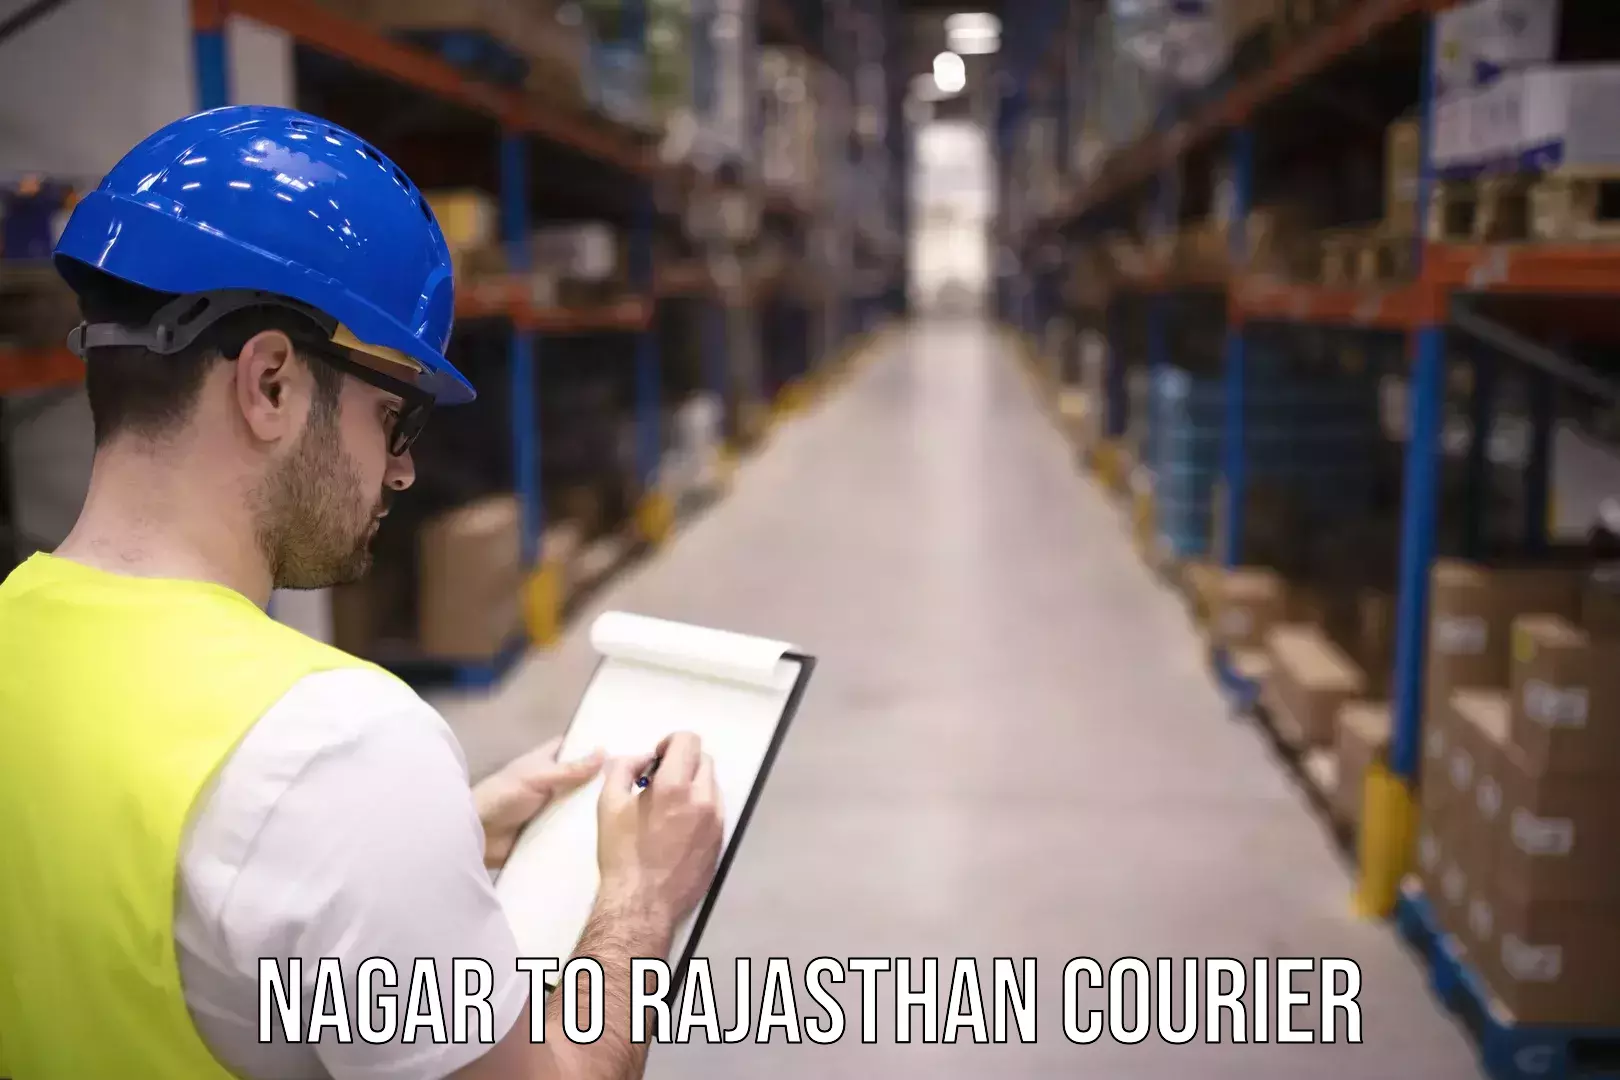 Efficient cargo handling Nagar to Rajasthan